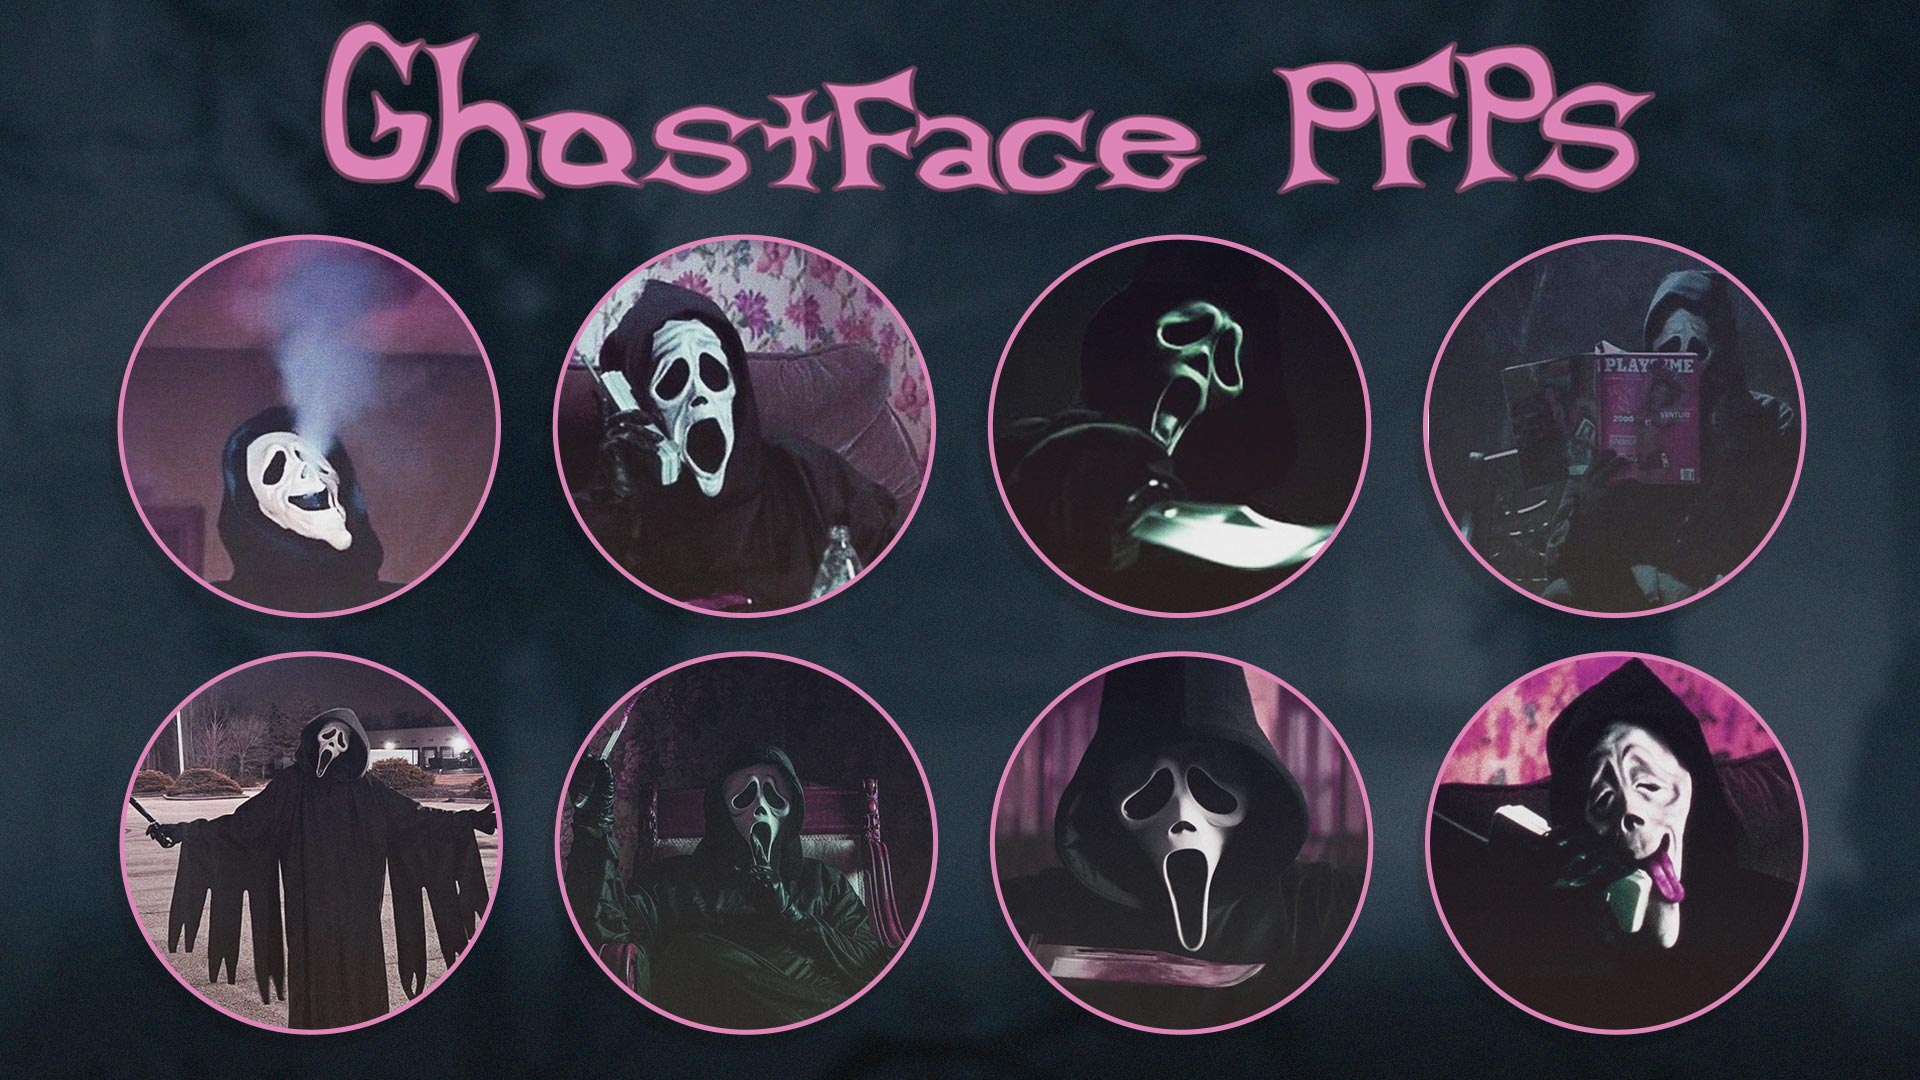 PFP Ghostface